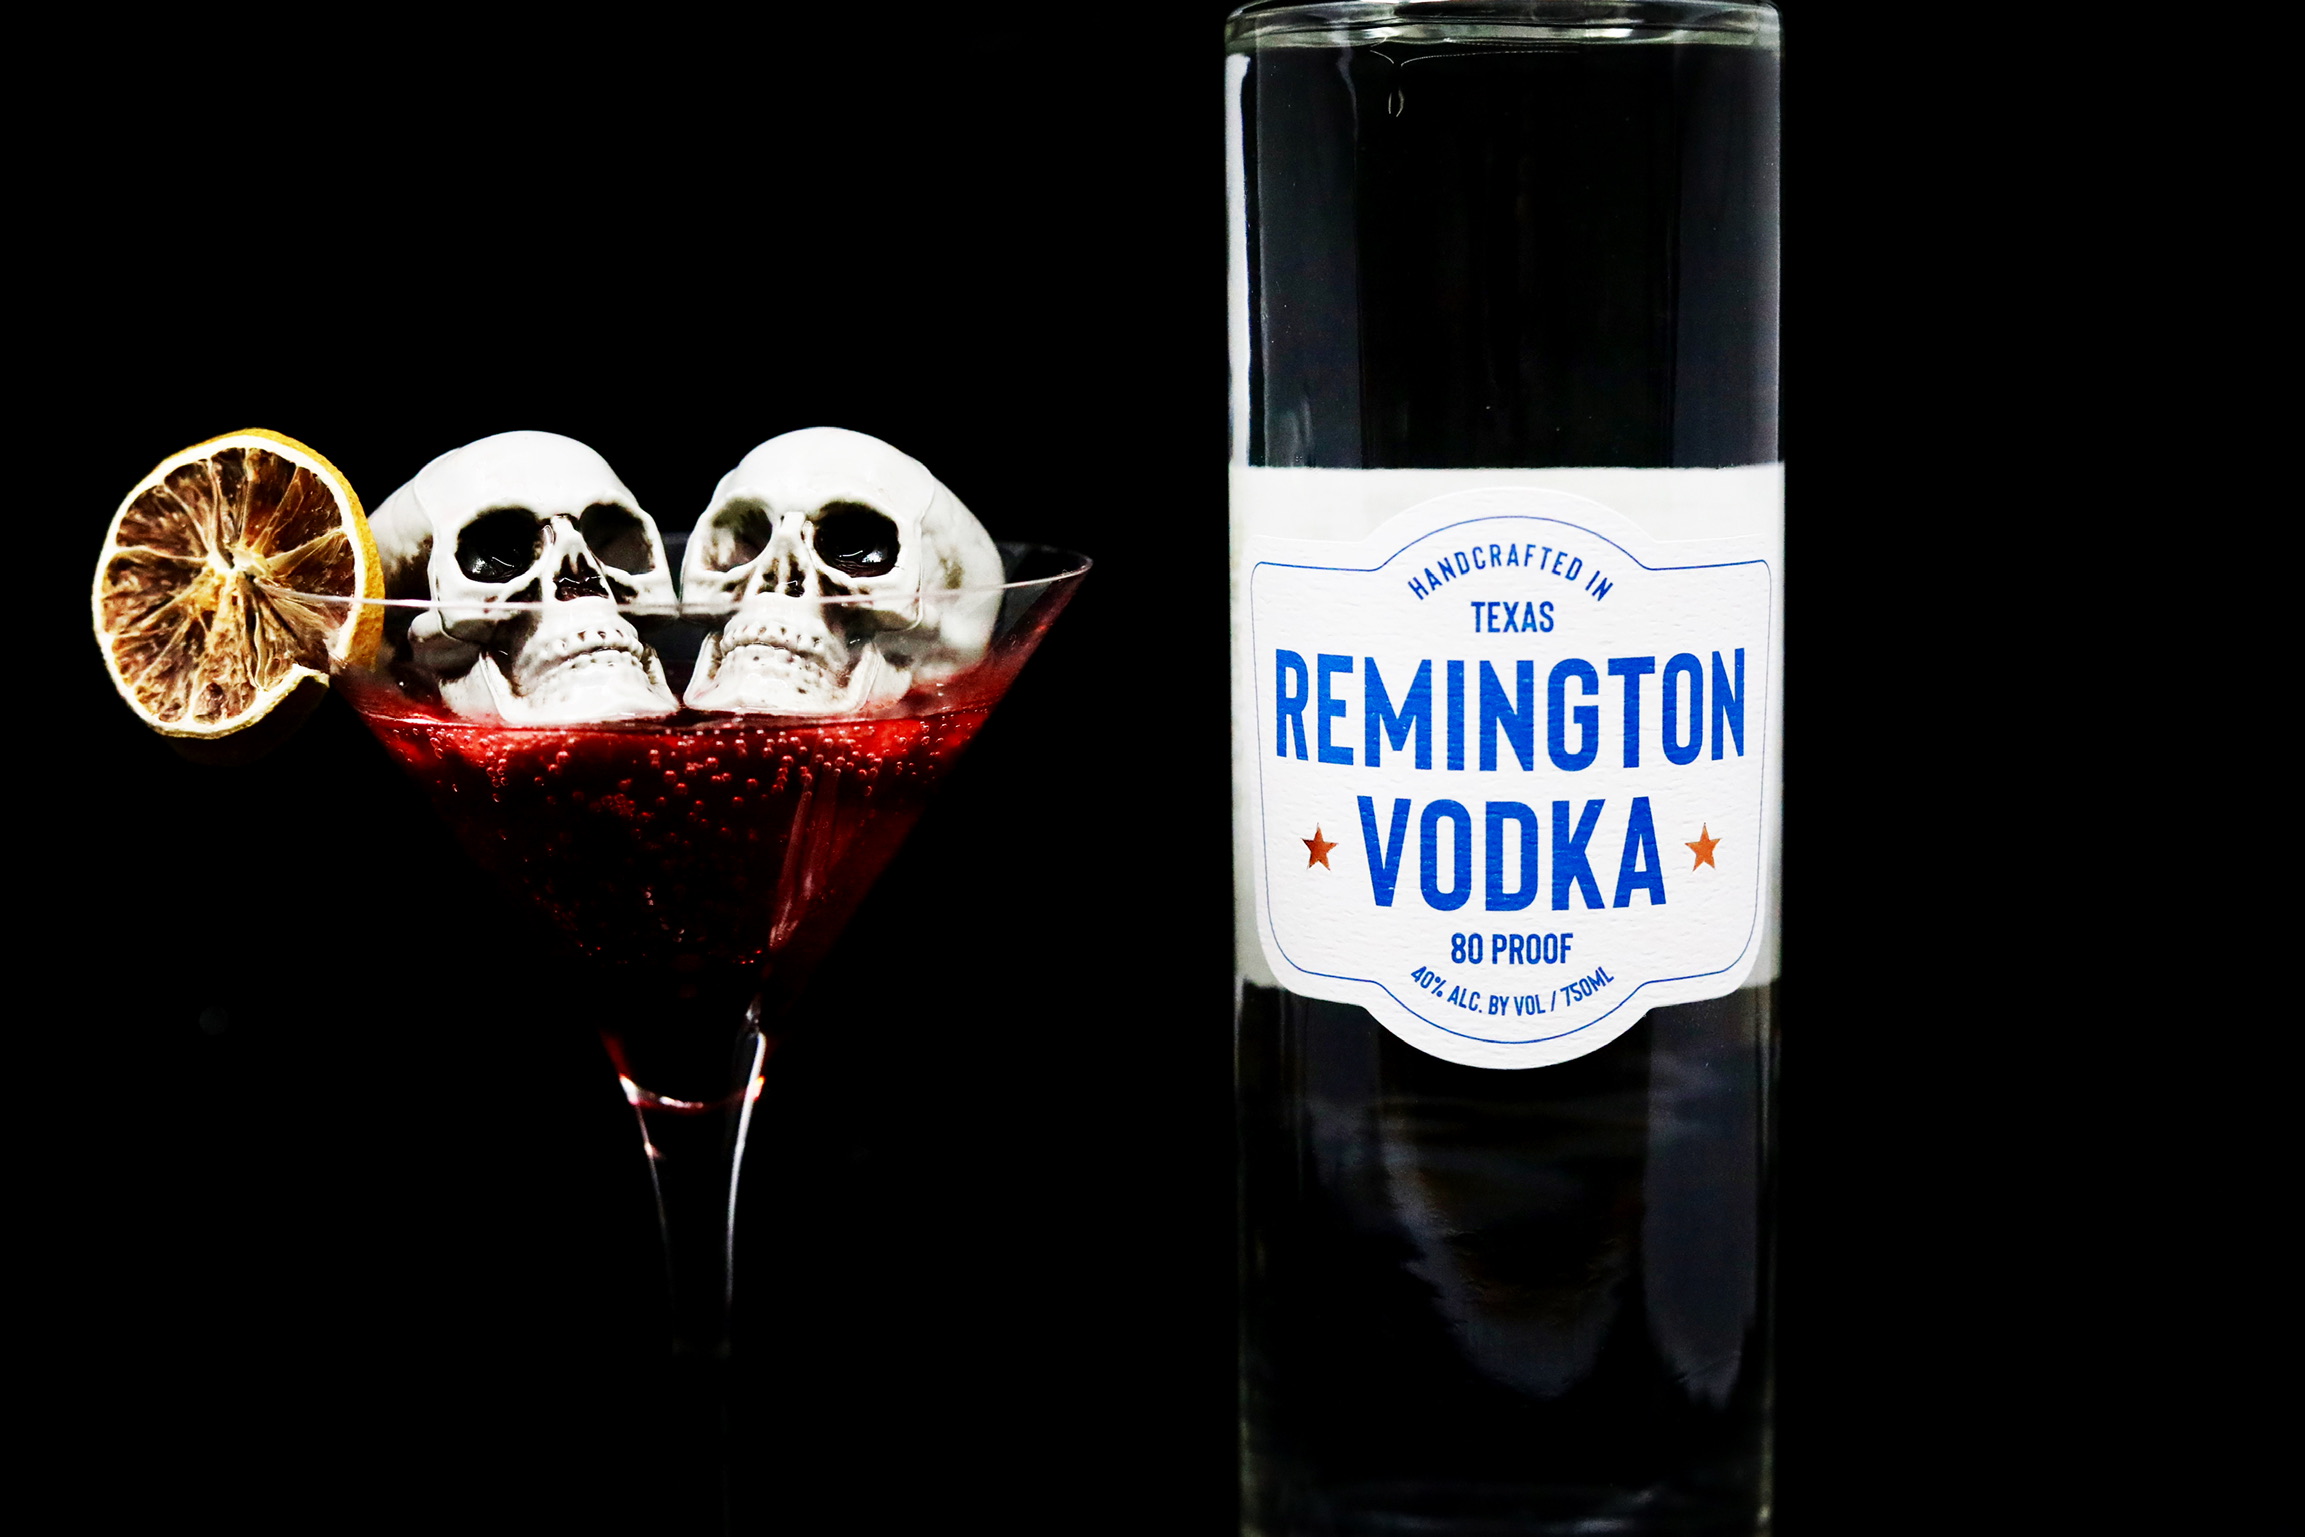 Vampire's Kiss Martini